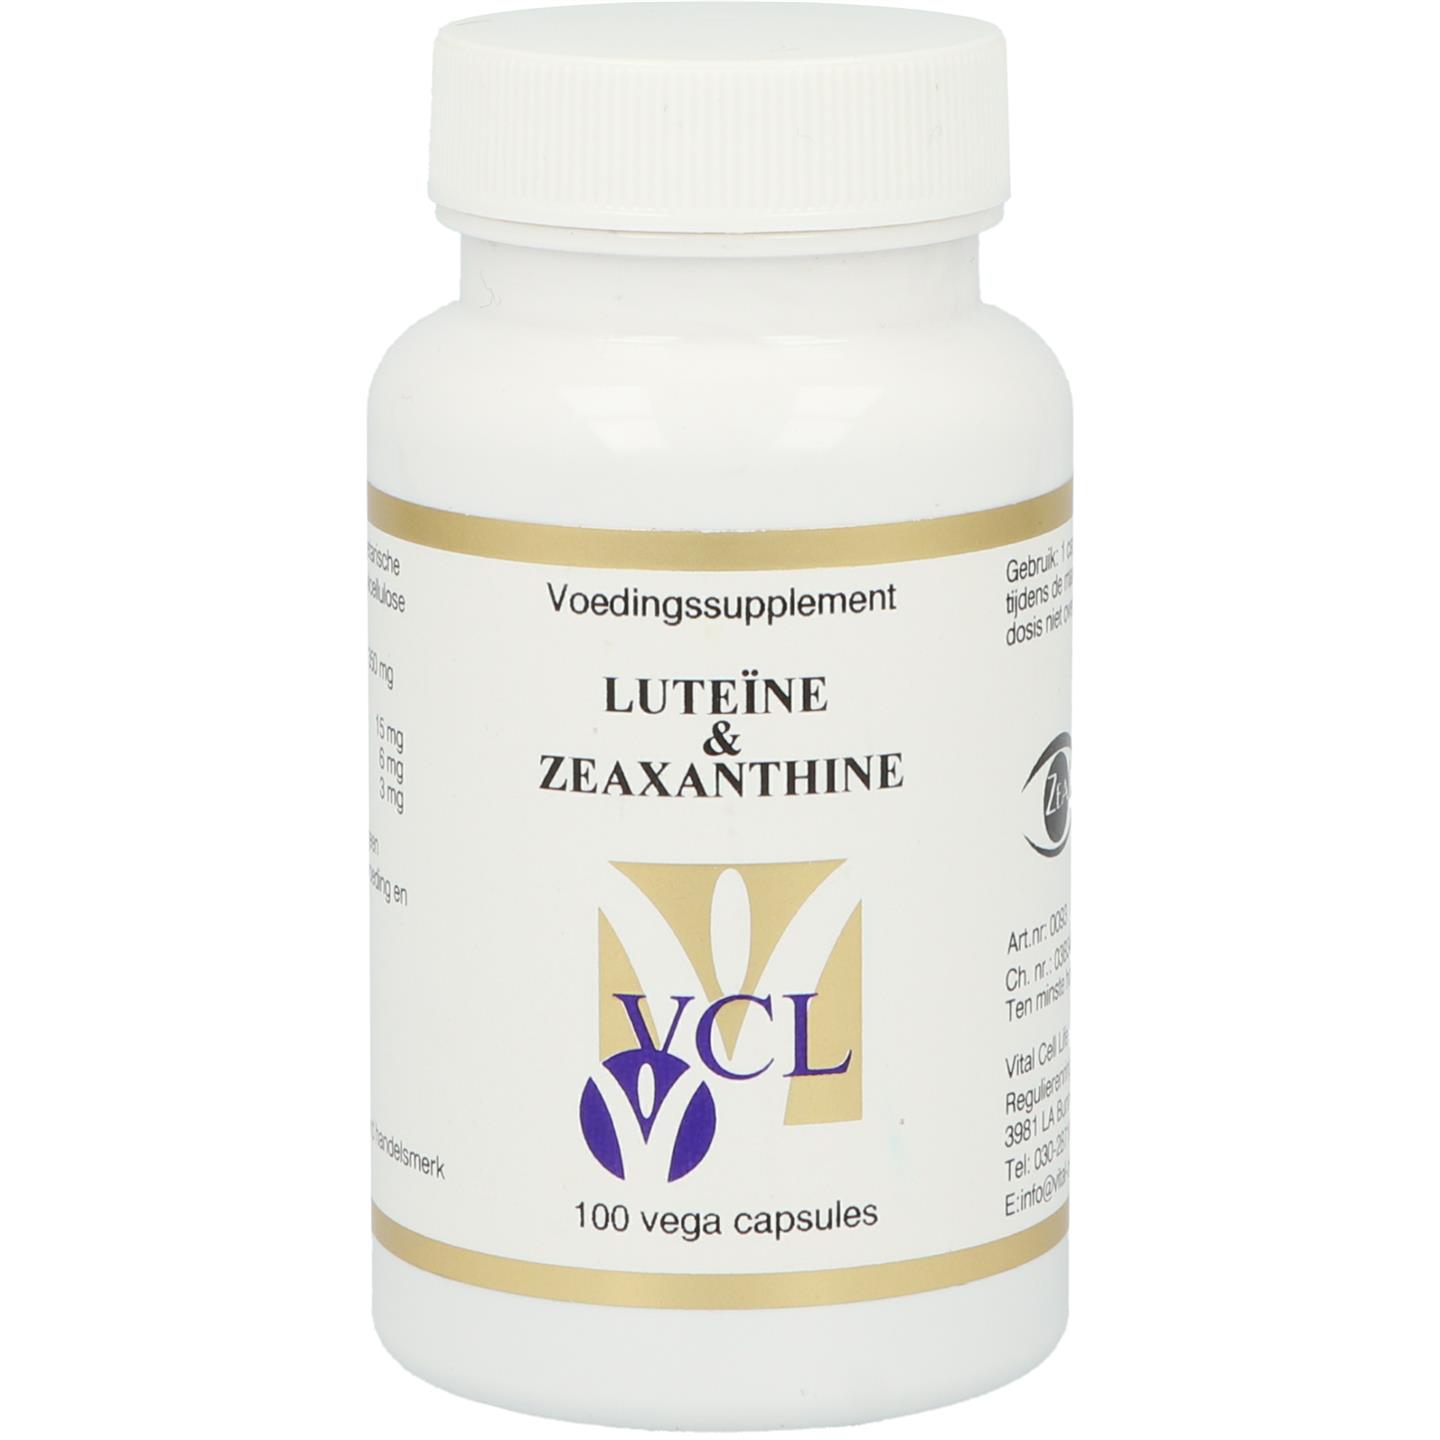 Luteïne & Zeaxanthine